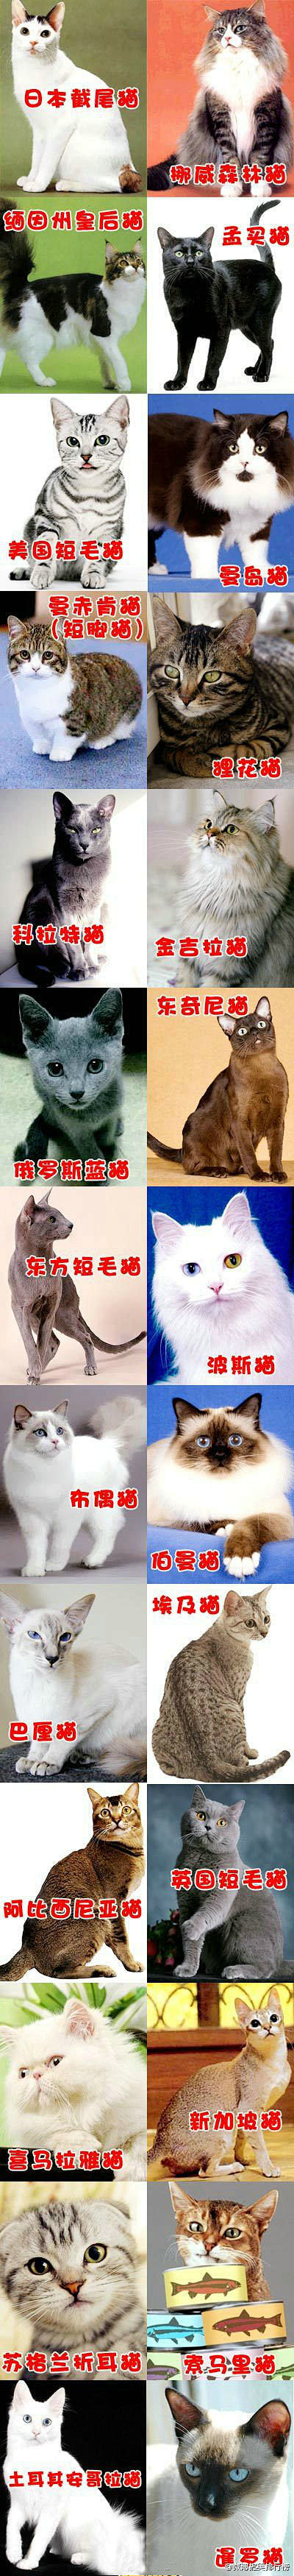 各种品种的猫猫